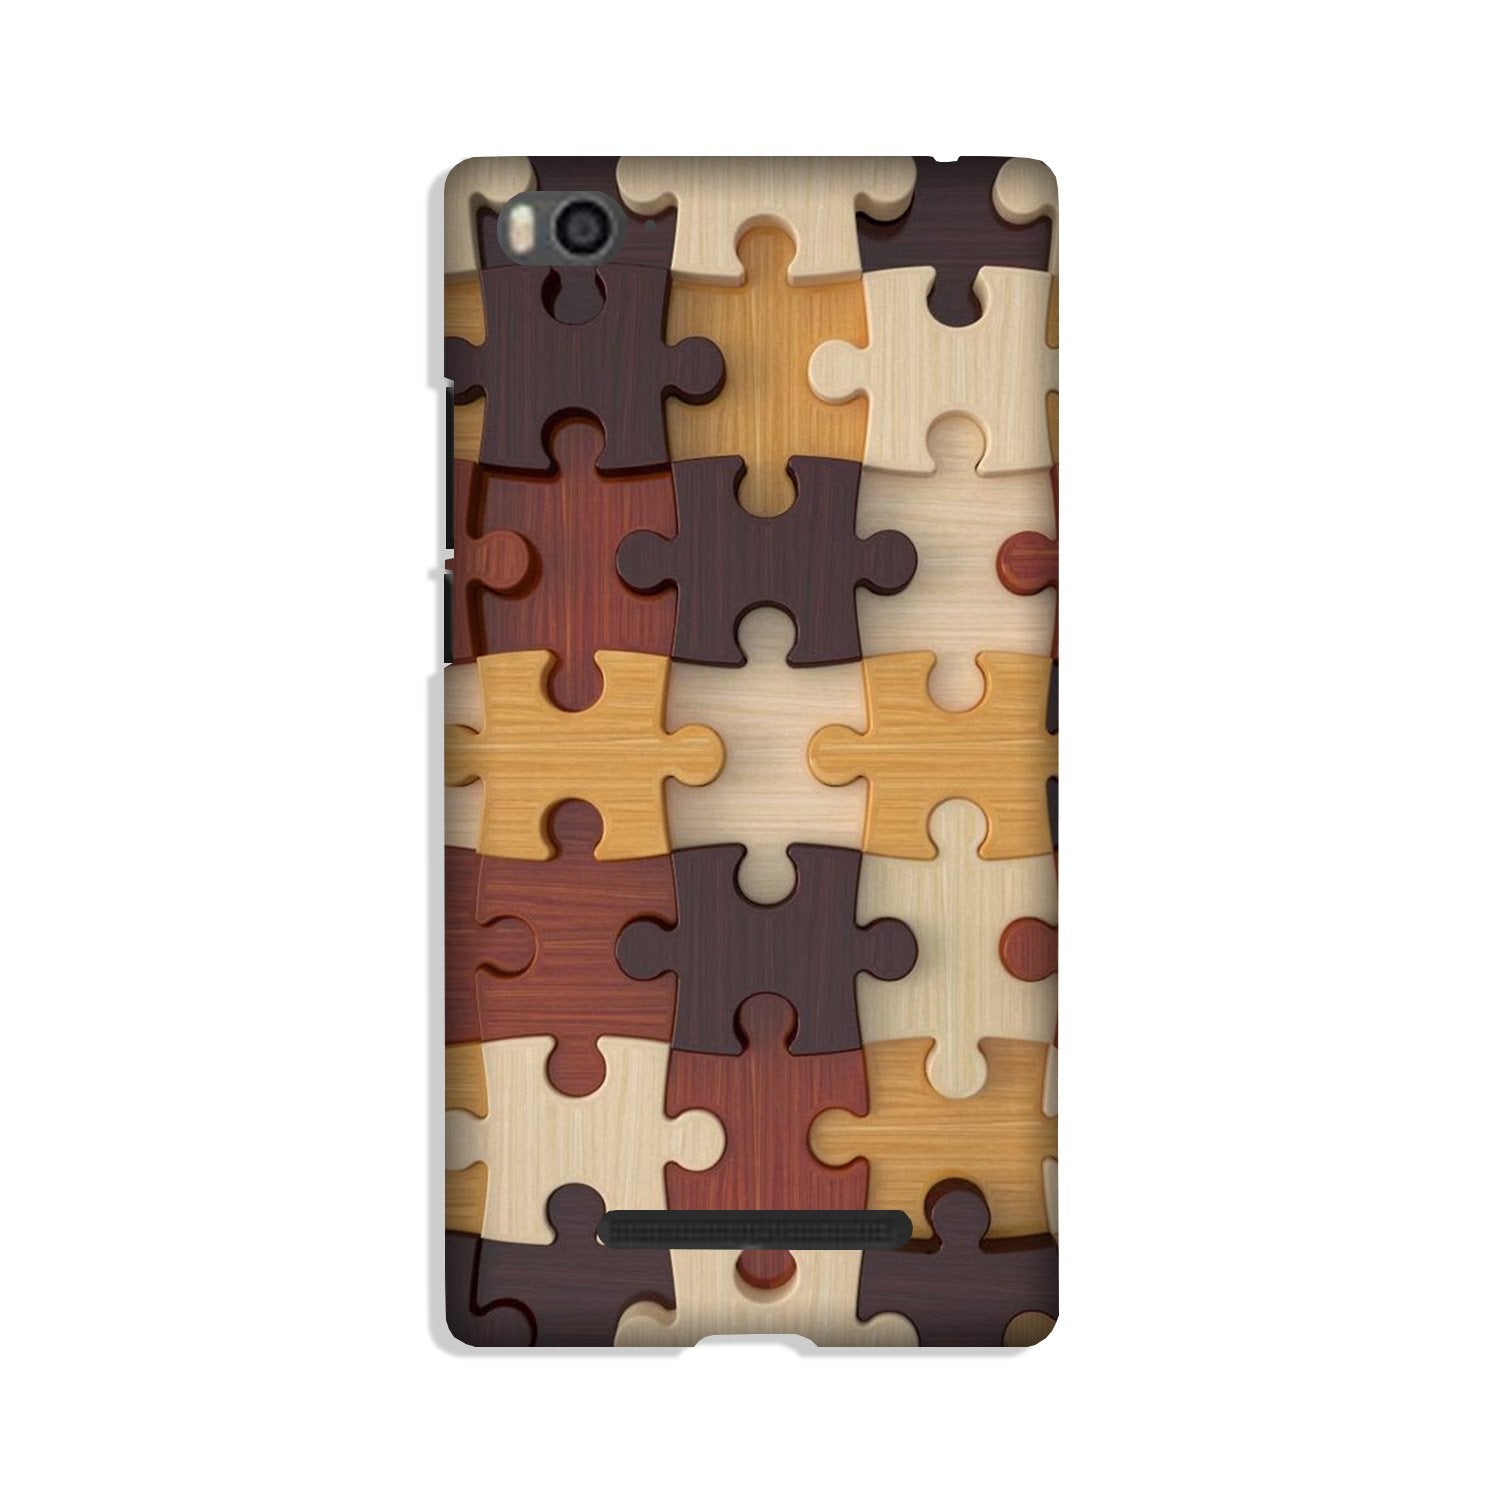 Puzzle Pattern Case for Xiaomi Redmi 5A (Design No. 217)